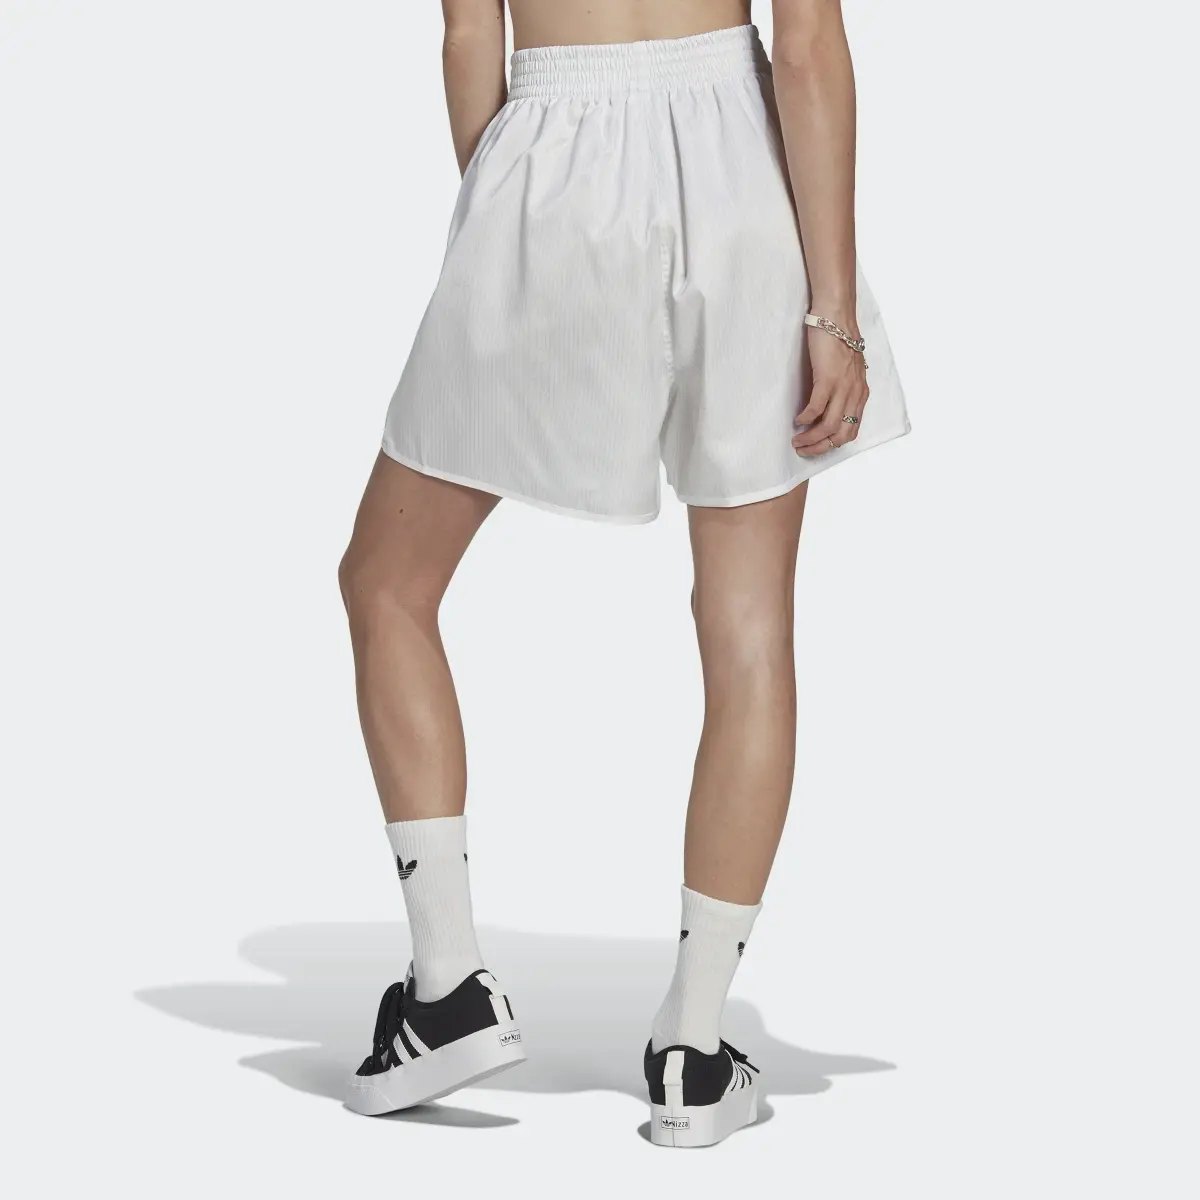 Adidas Loose Allover Print Satin Shorts. 2